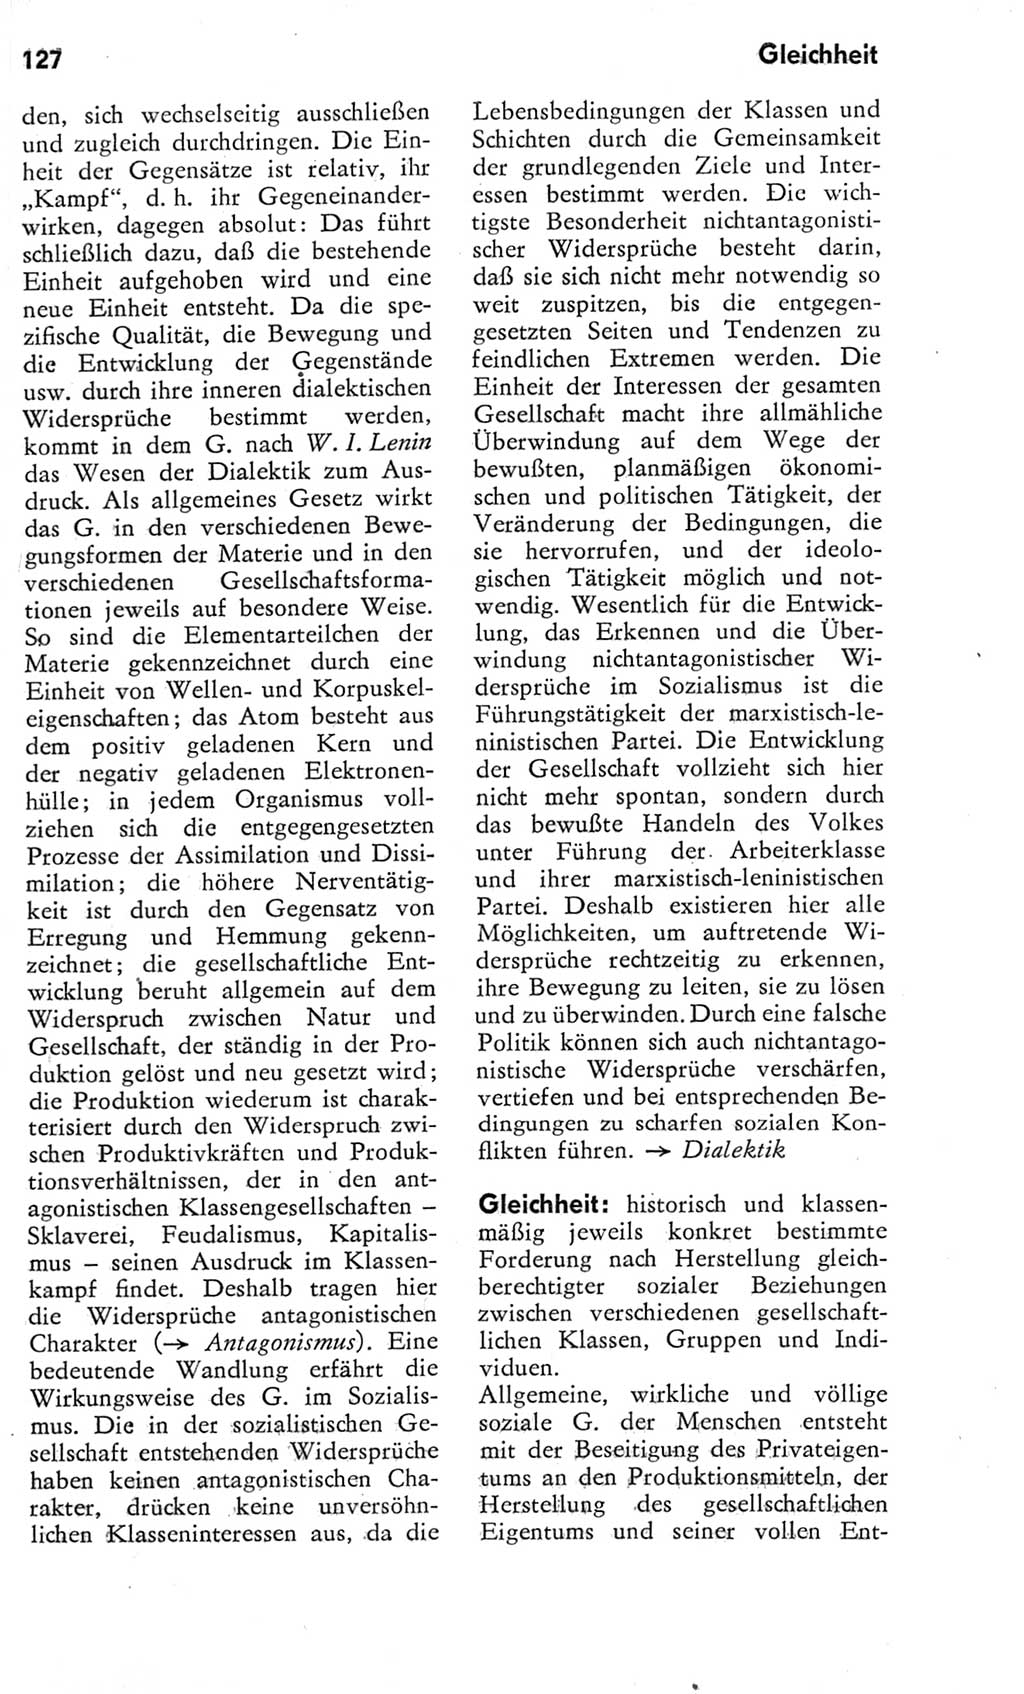 Kleines Wörterbuch der marxistisch-leninistischen Philosophie [Deutsche Demokratische Republik (DDR)] 1975, Seite 127 (Kl. Wb. ML Phil. DDR 1975, S. 127)